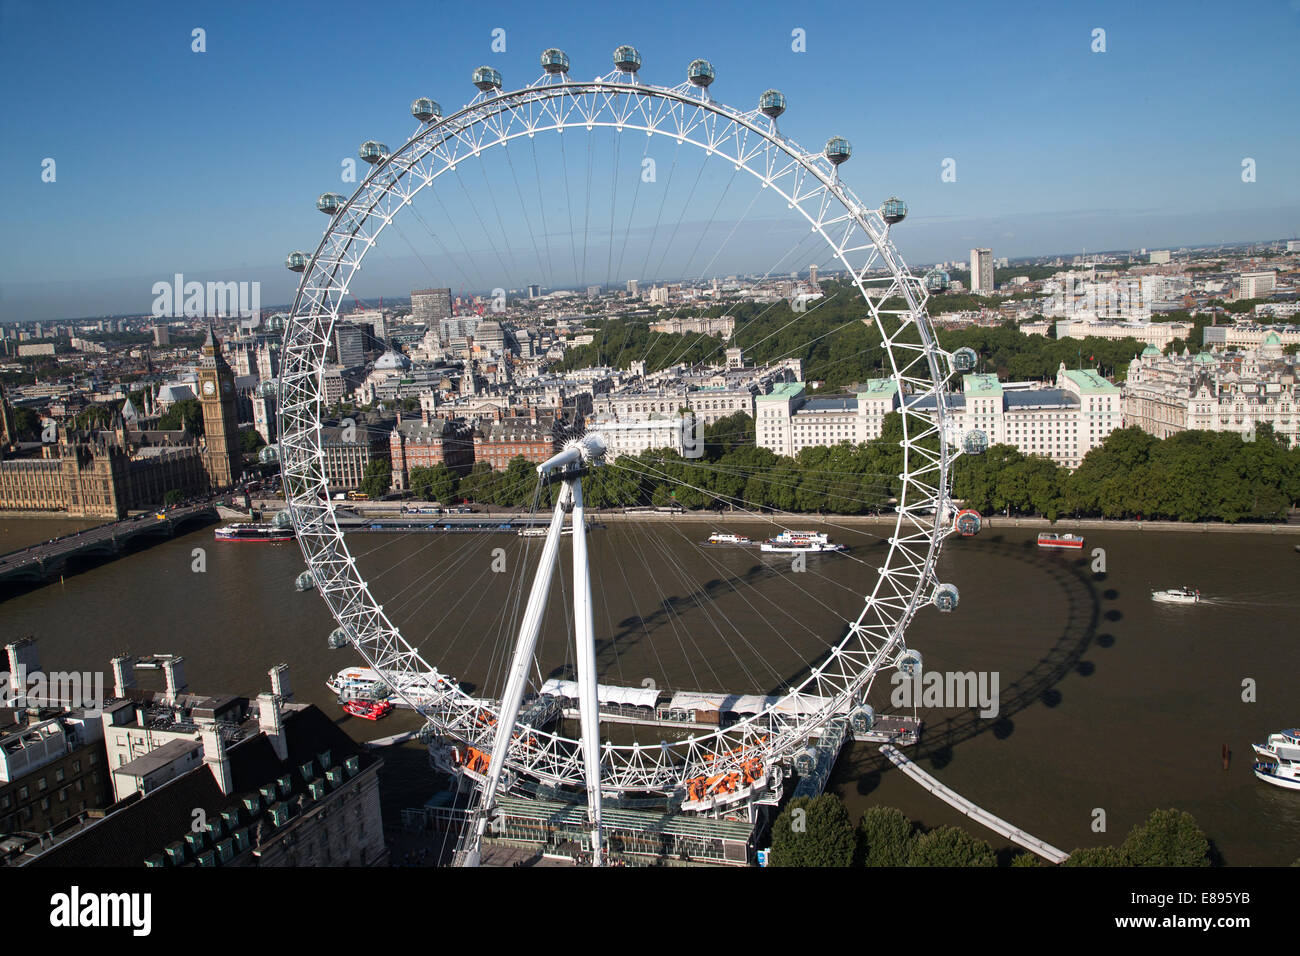 Das Millennium Wheel-Riesenrad abgeschlossen im Februar 2000-135 Meter hoch mit 32 Hülsen mit den Houses of Parliament Stockfoto